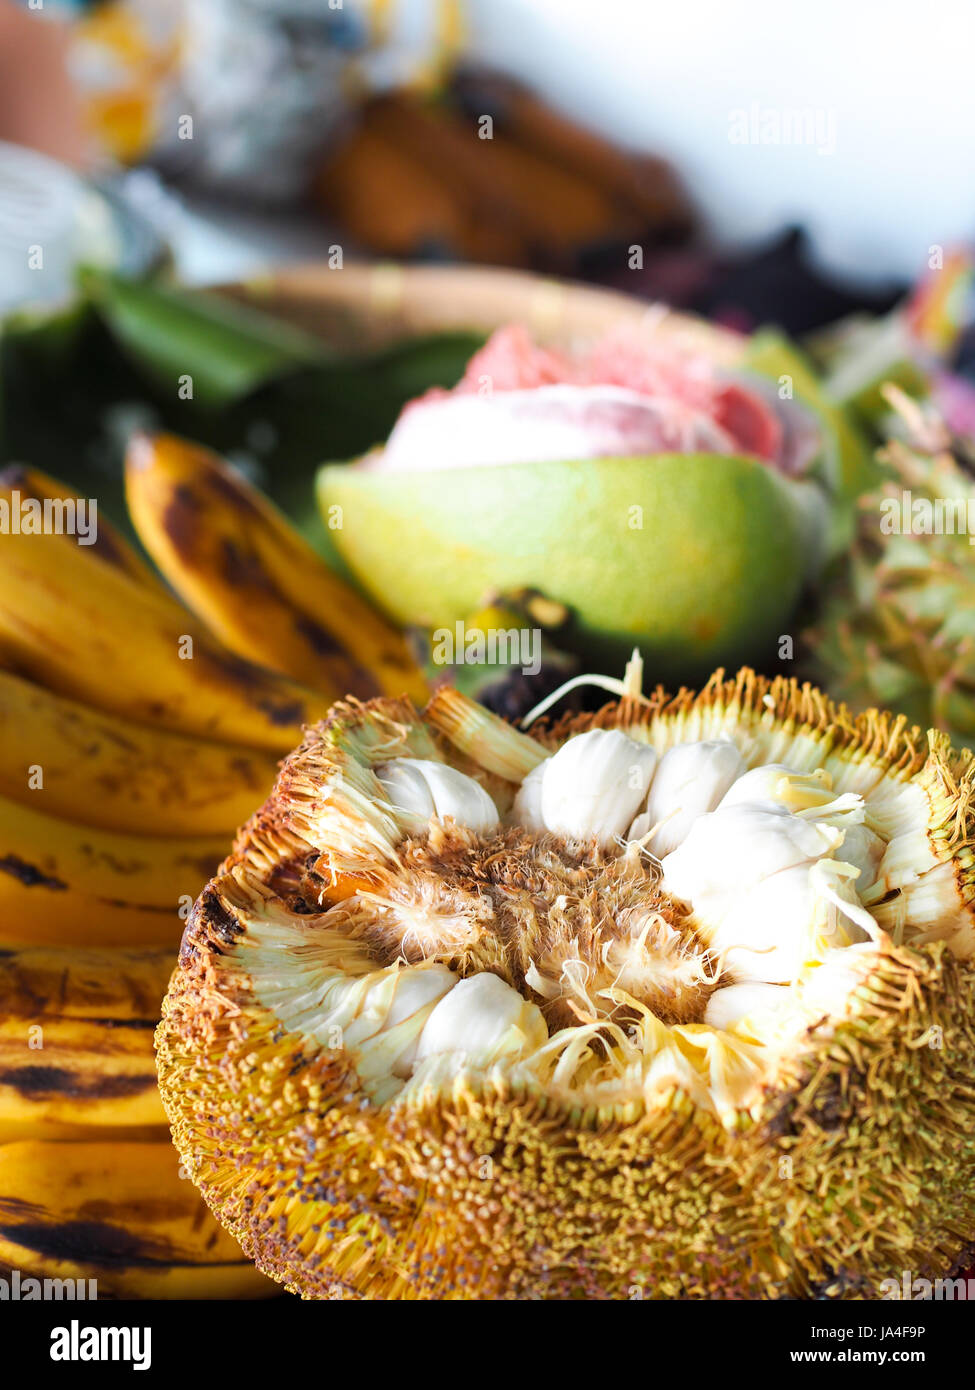 Marang, eine tropische Frucht gefunden in Davao, Philippinen, das sieht aus wie eine Jackfrucht und schmeckt wie eine Kreuzung zwischen Soursop und Mangostan. Stockfoto